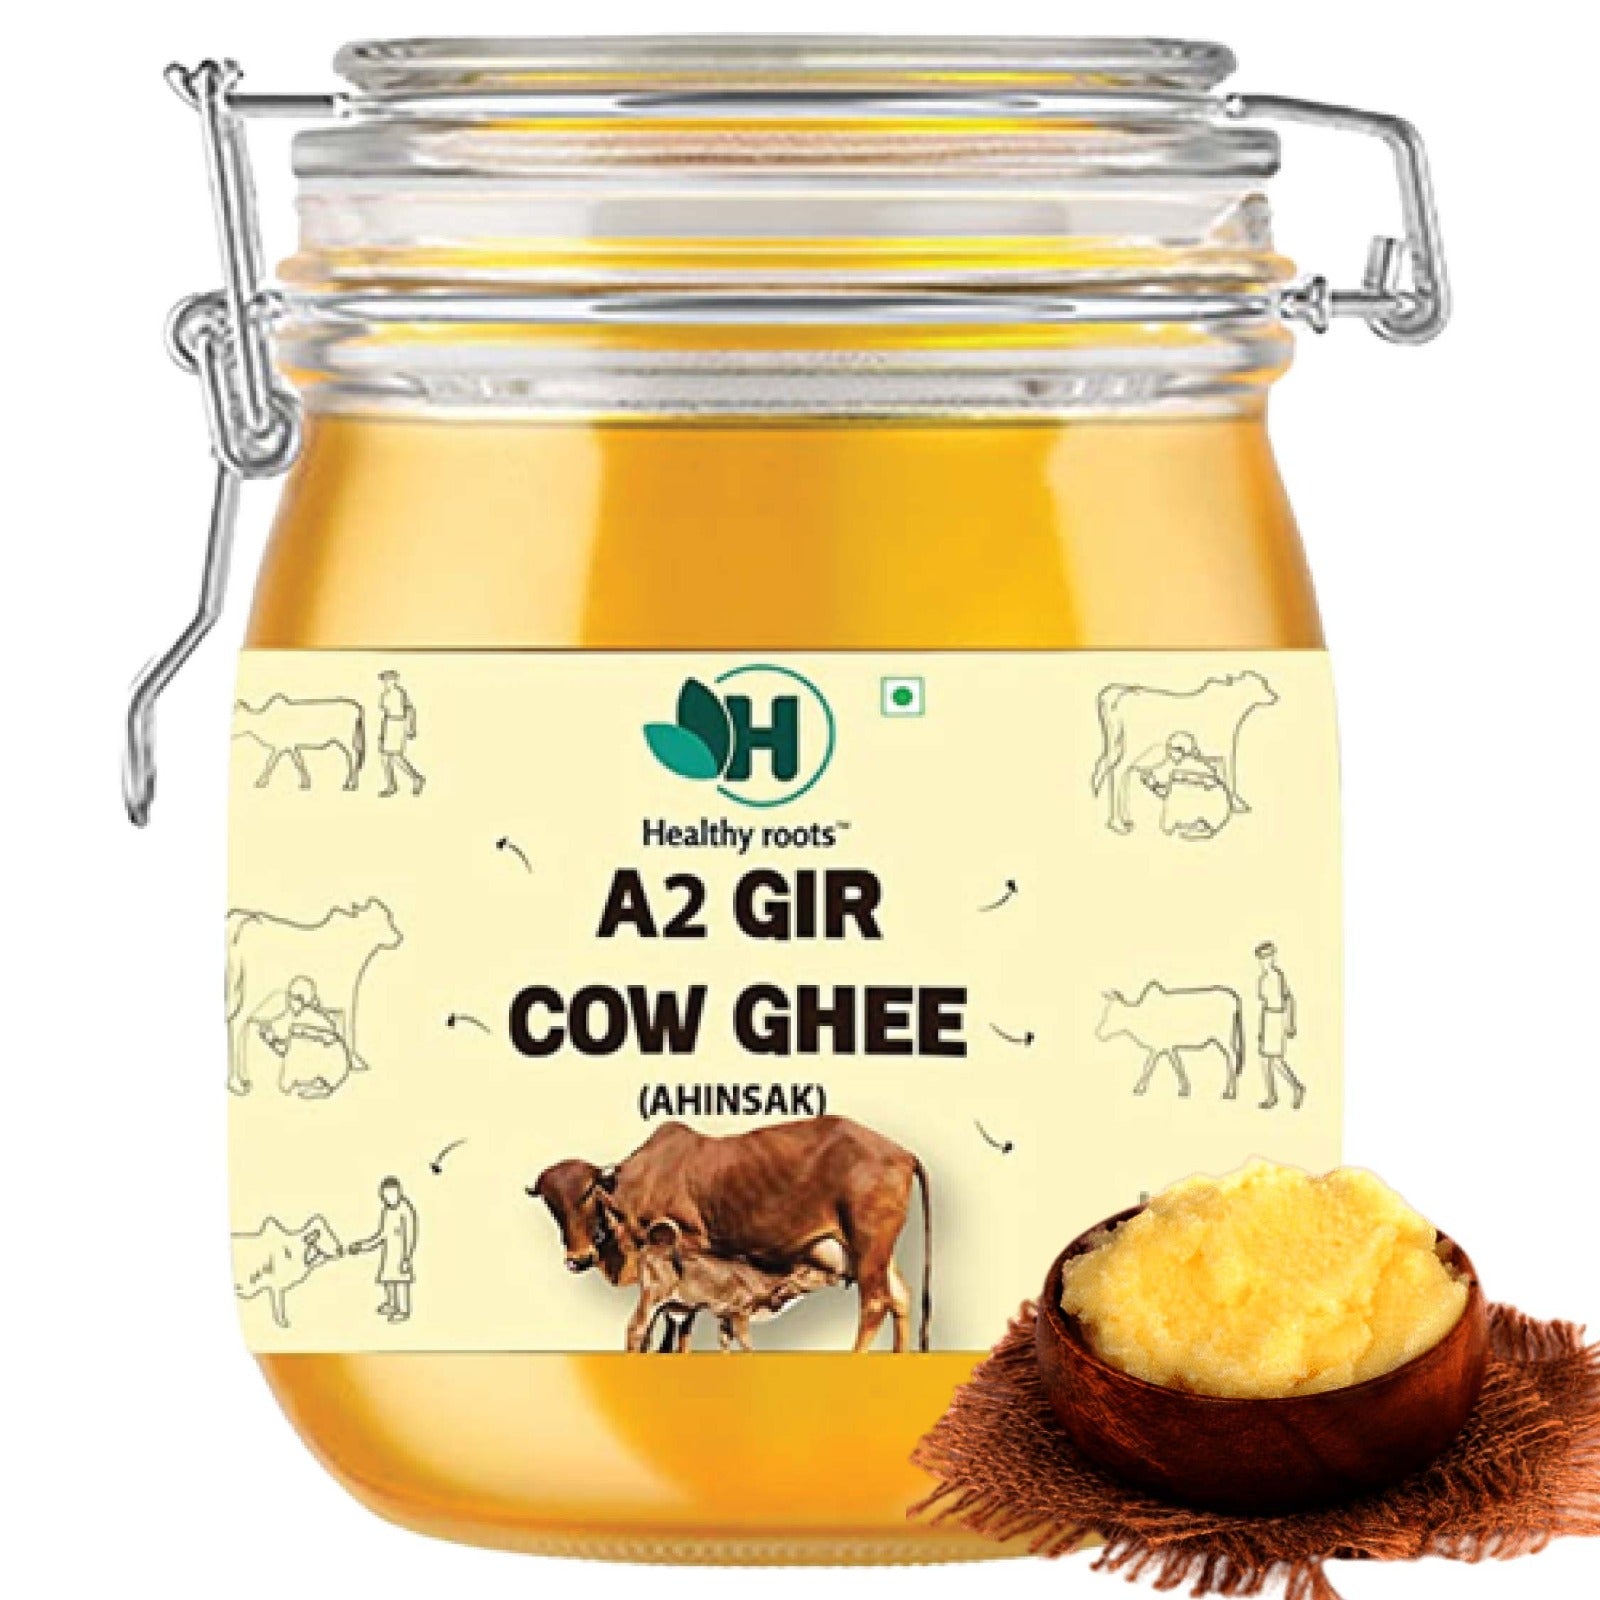 A2 Gir Cow Ghee